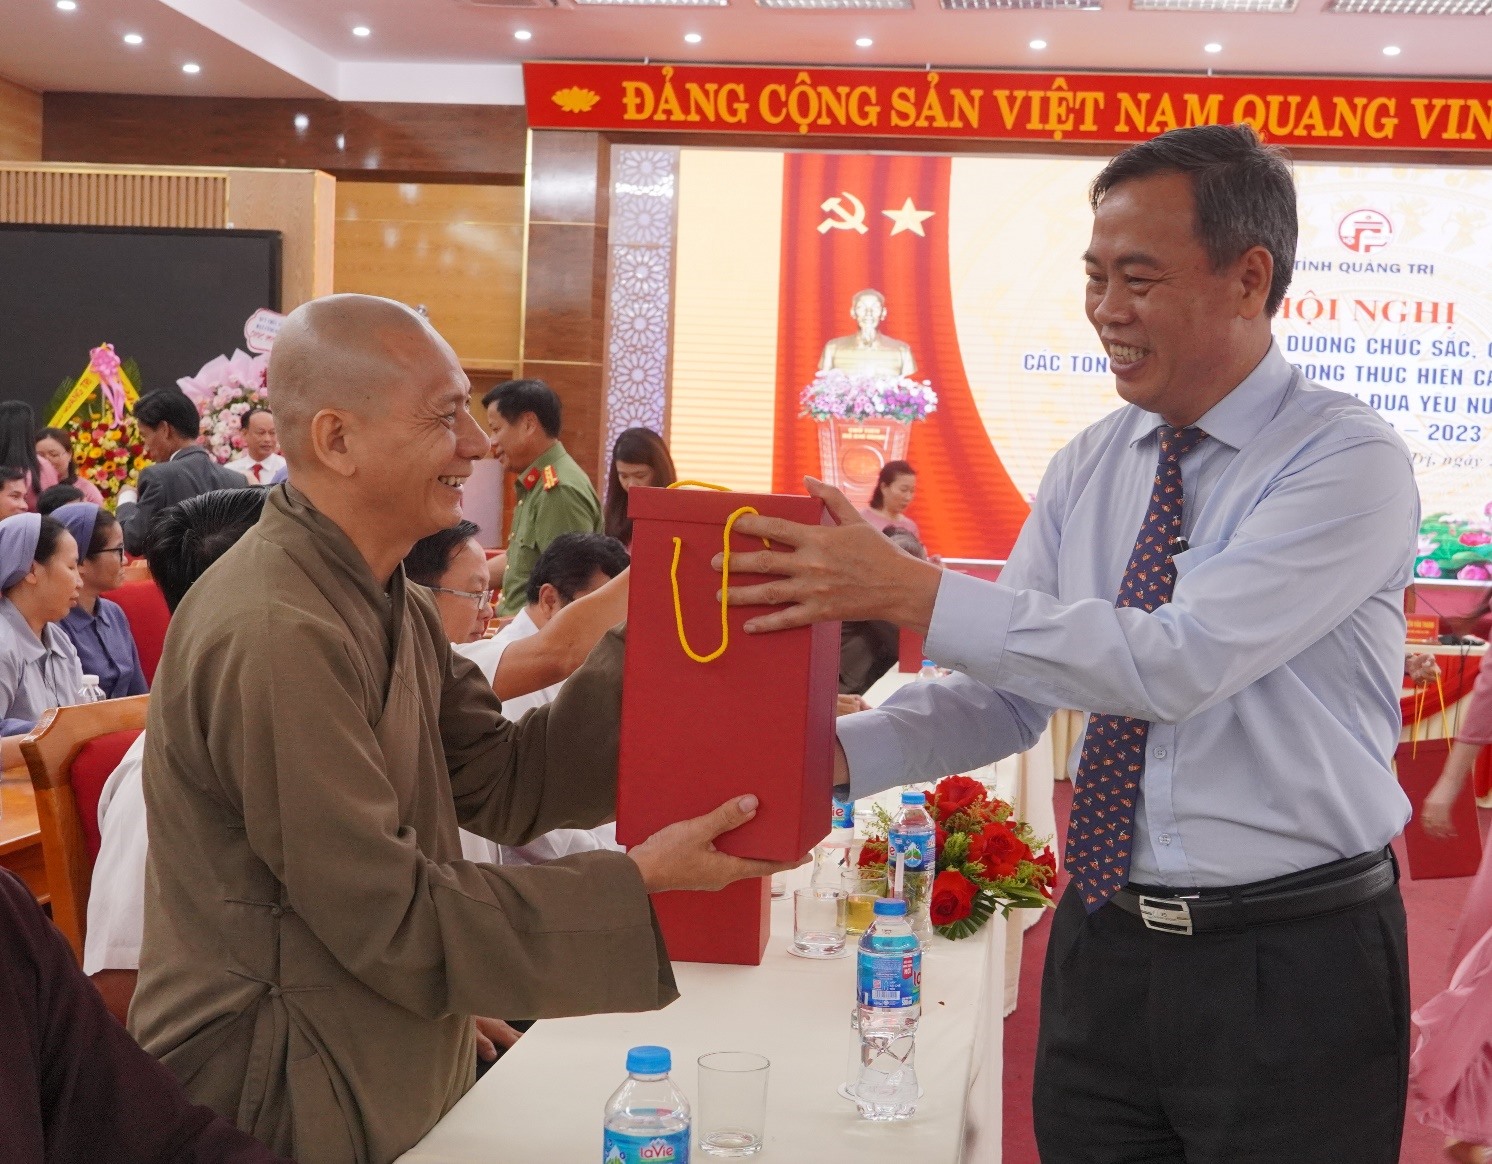 Phó Bí thư Thường trực Tỉnh ủy, Chủ tịch HĐND tỉnh Nguyễn Đăng Quang tặng quà cho các chức sắc, chức việc -Ảnh: Hồng Hà